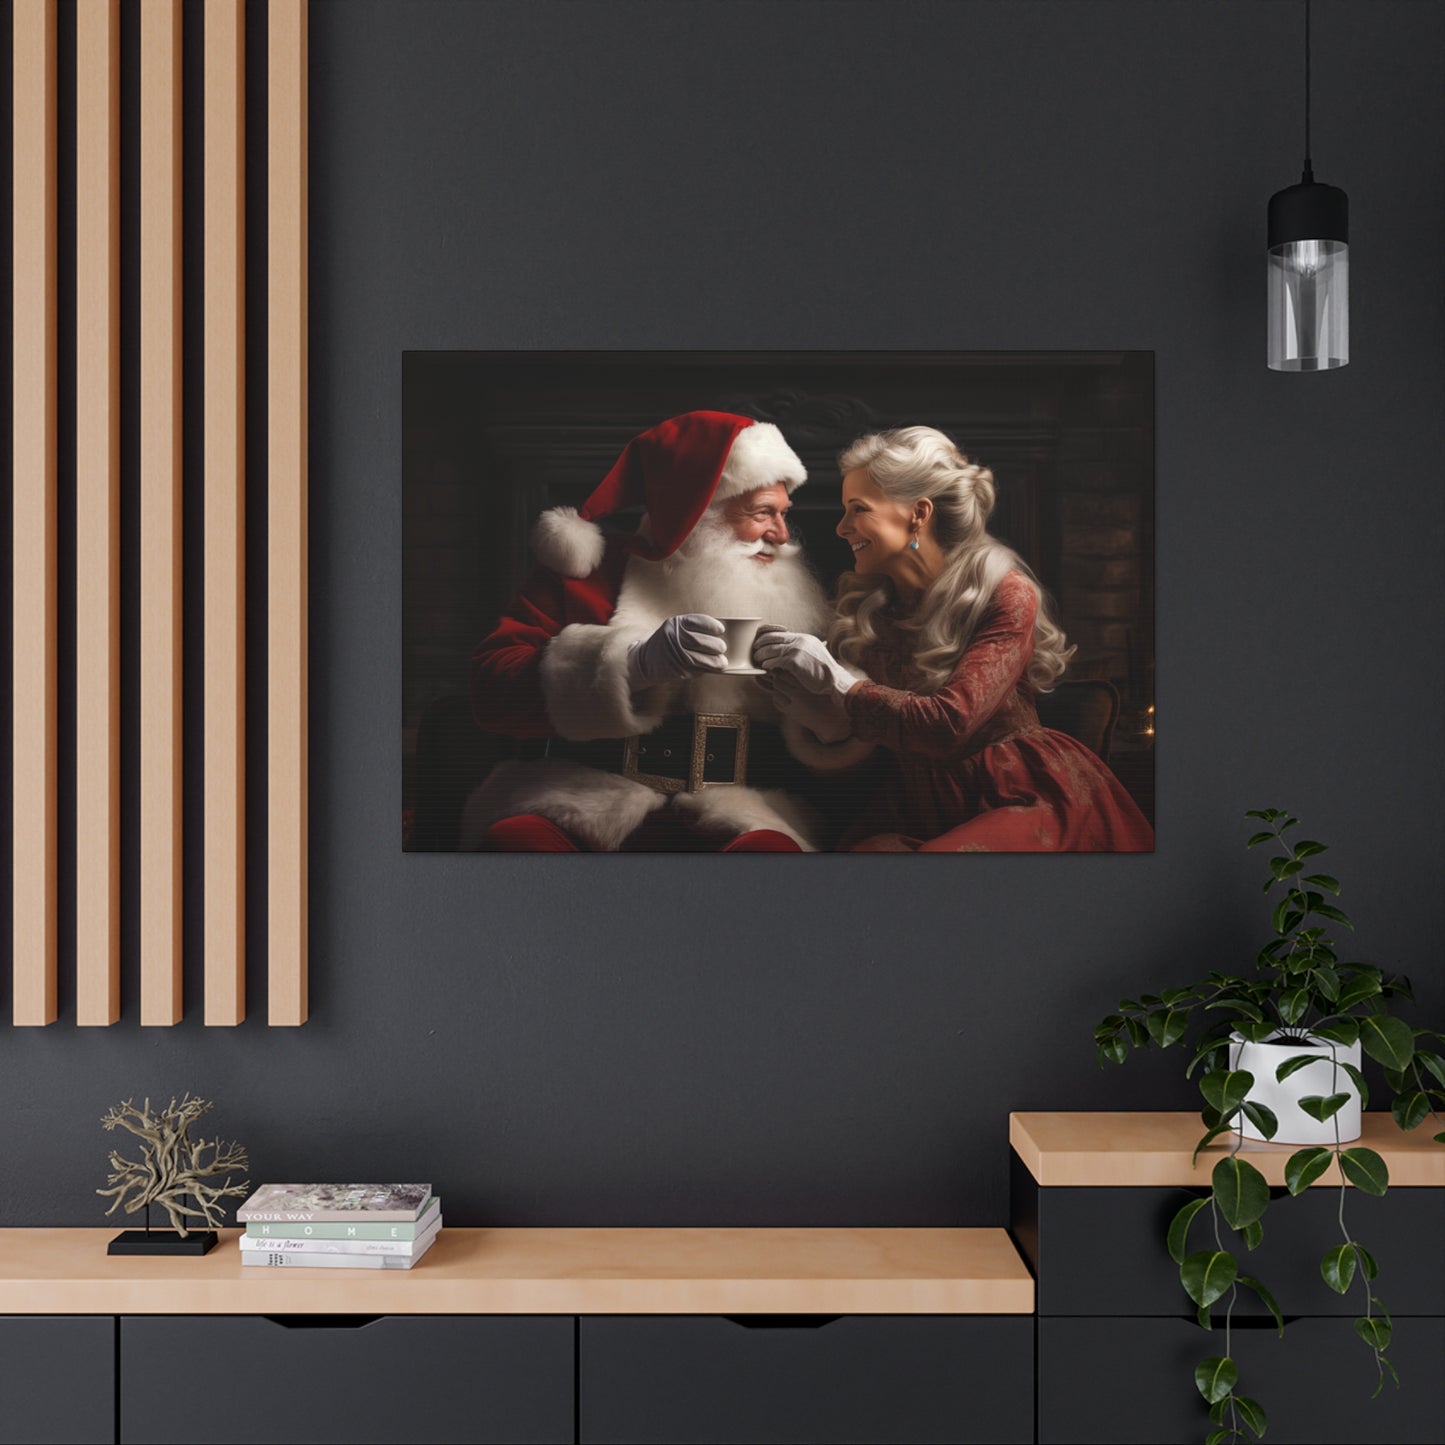 Christmas Santa wall decor